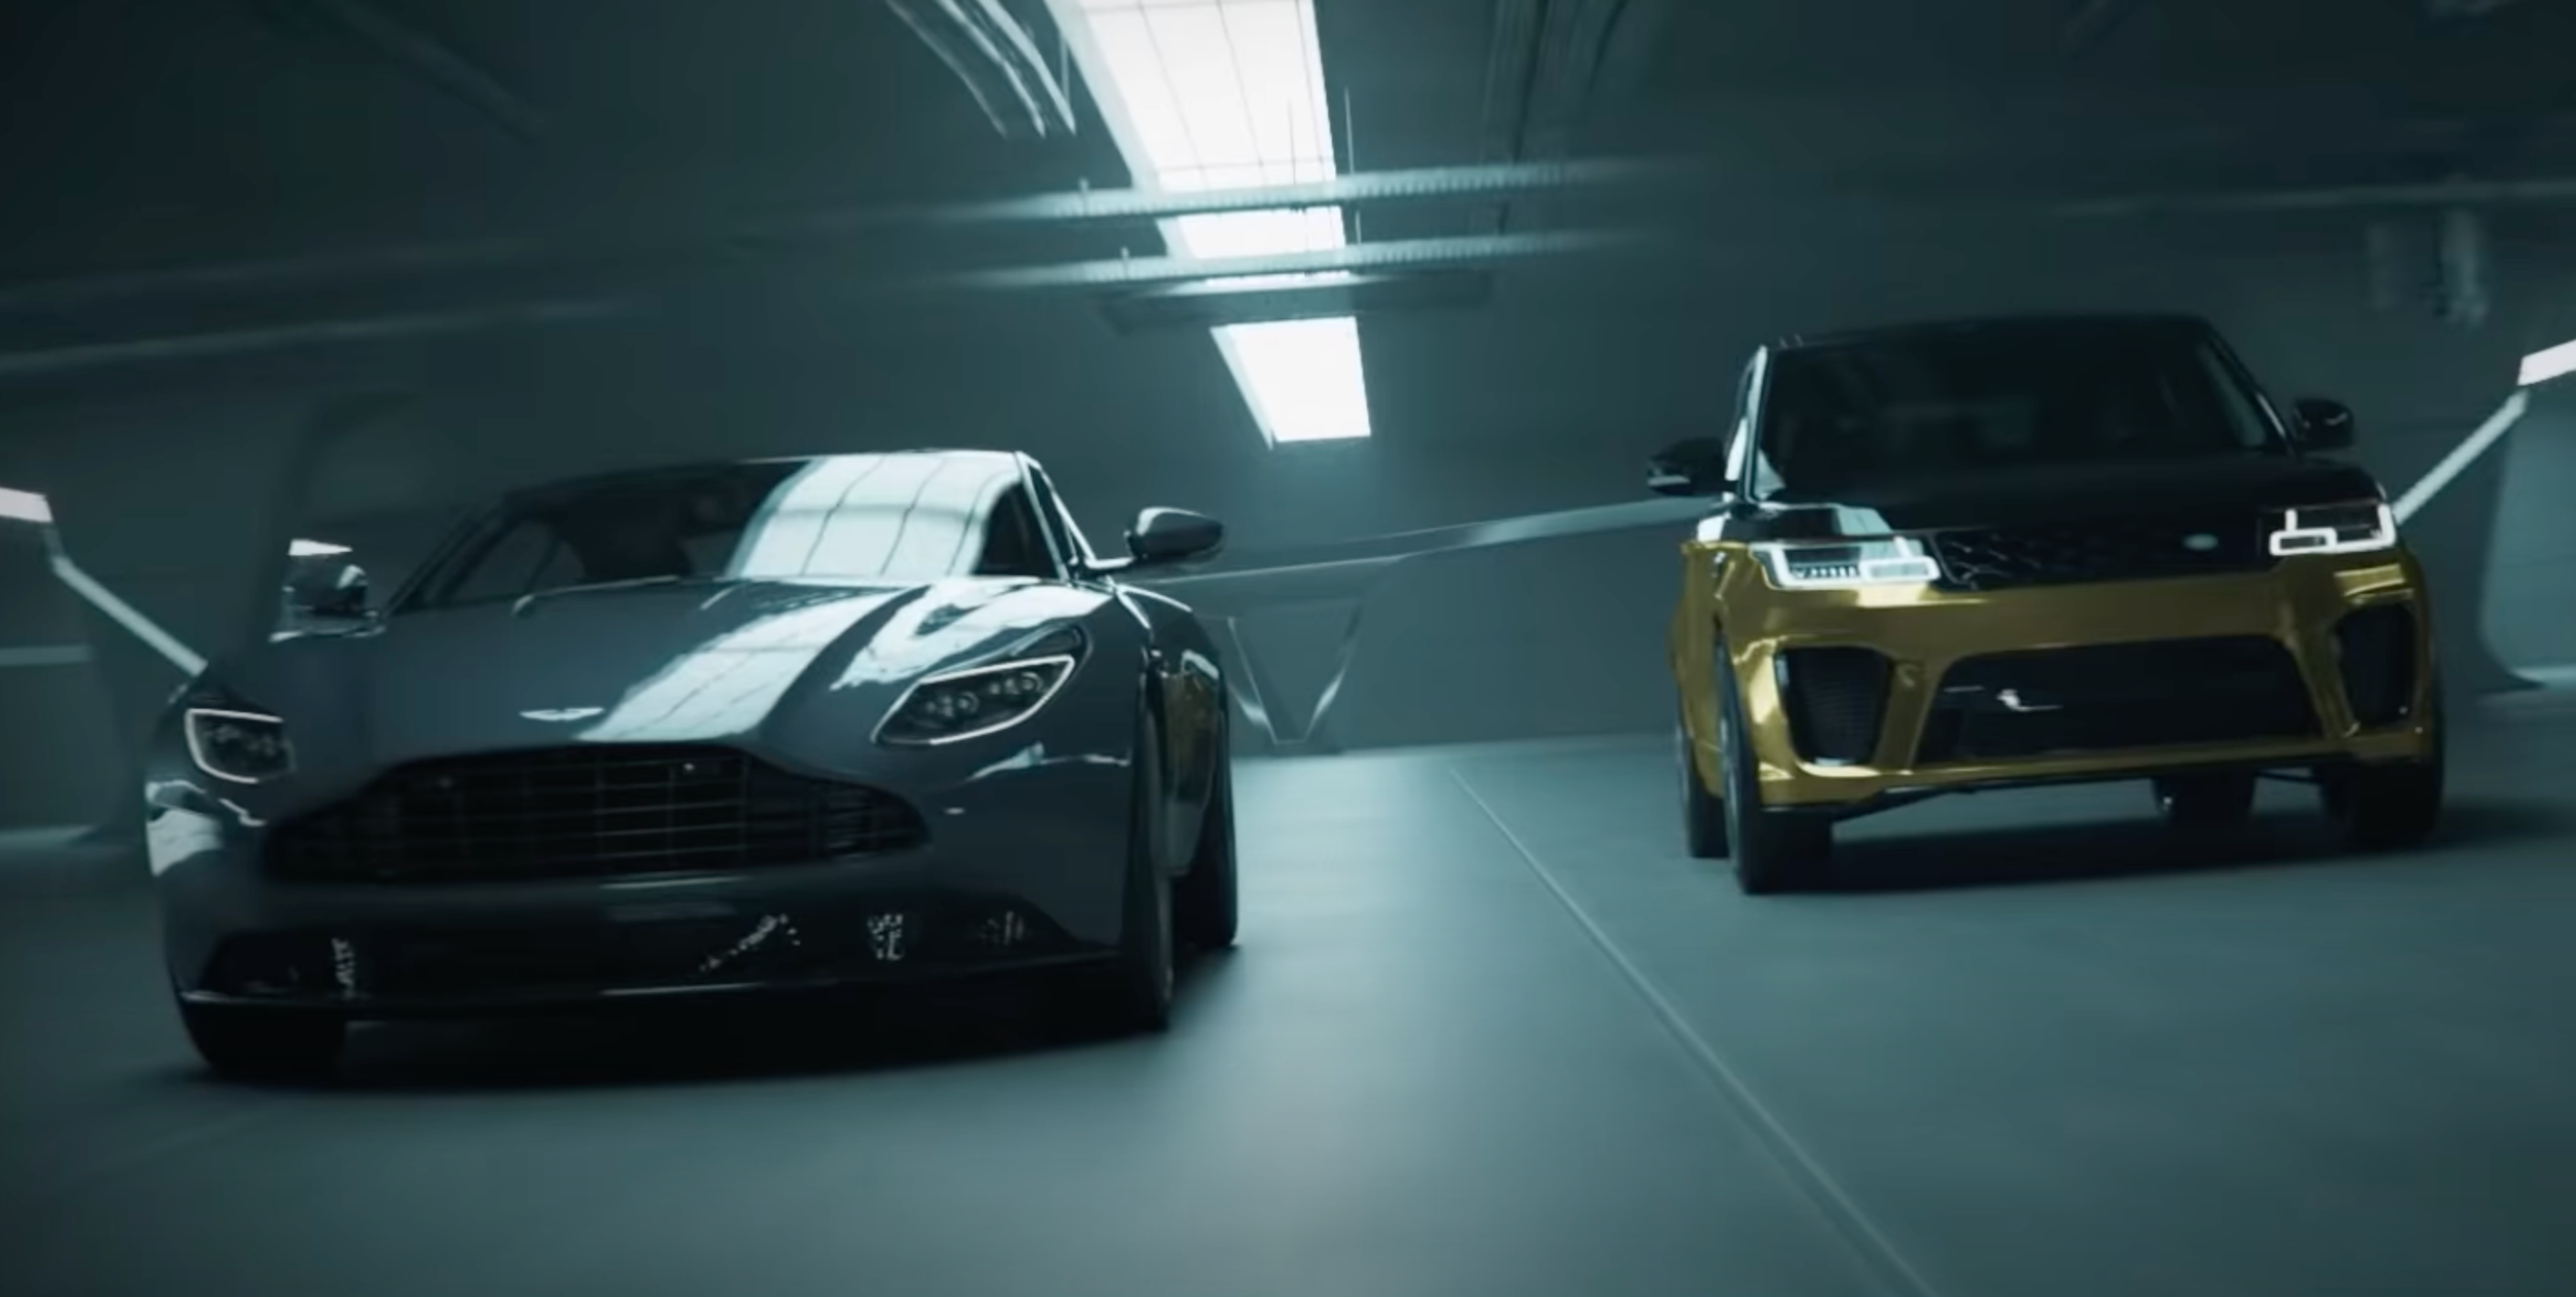 An Aston Martin and Range Rover in an underground parking garage.